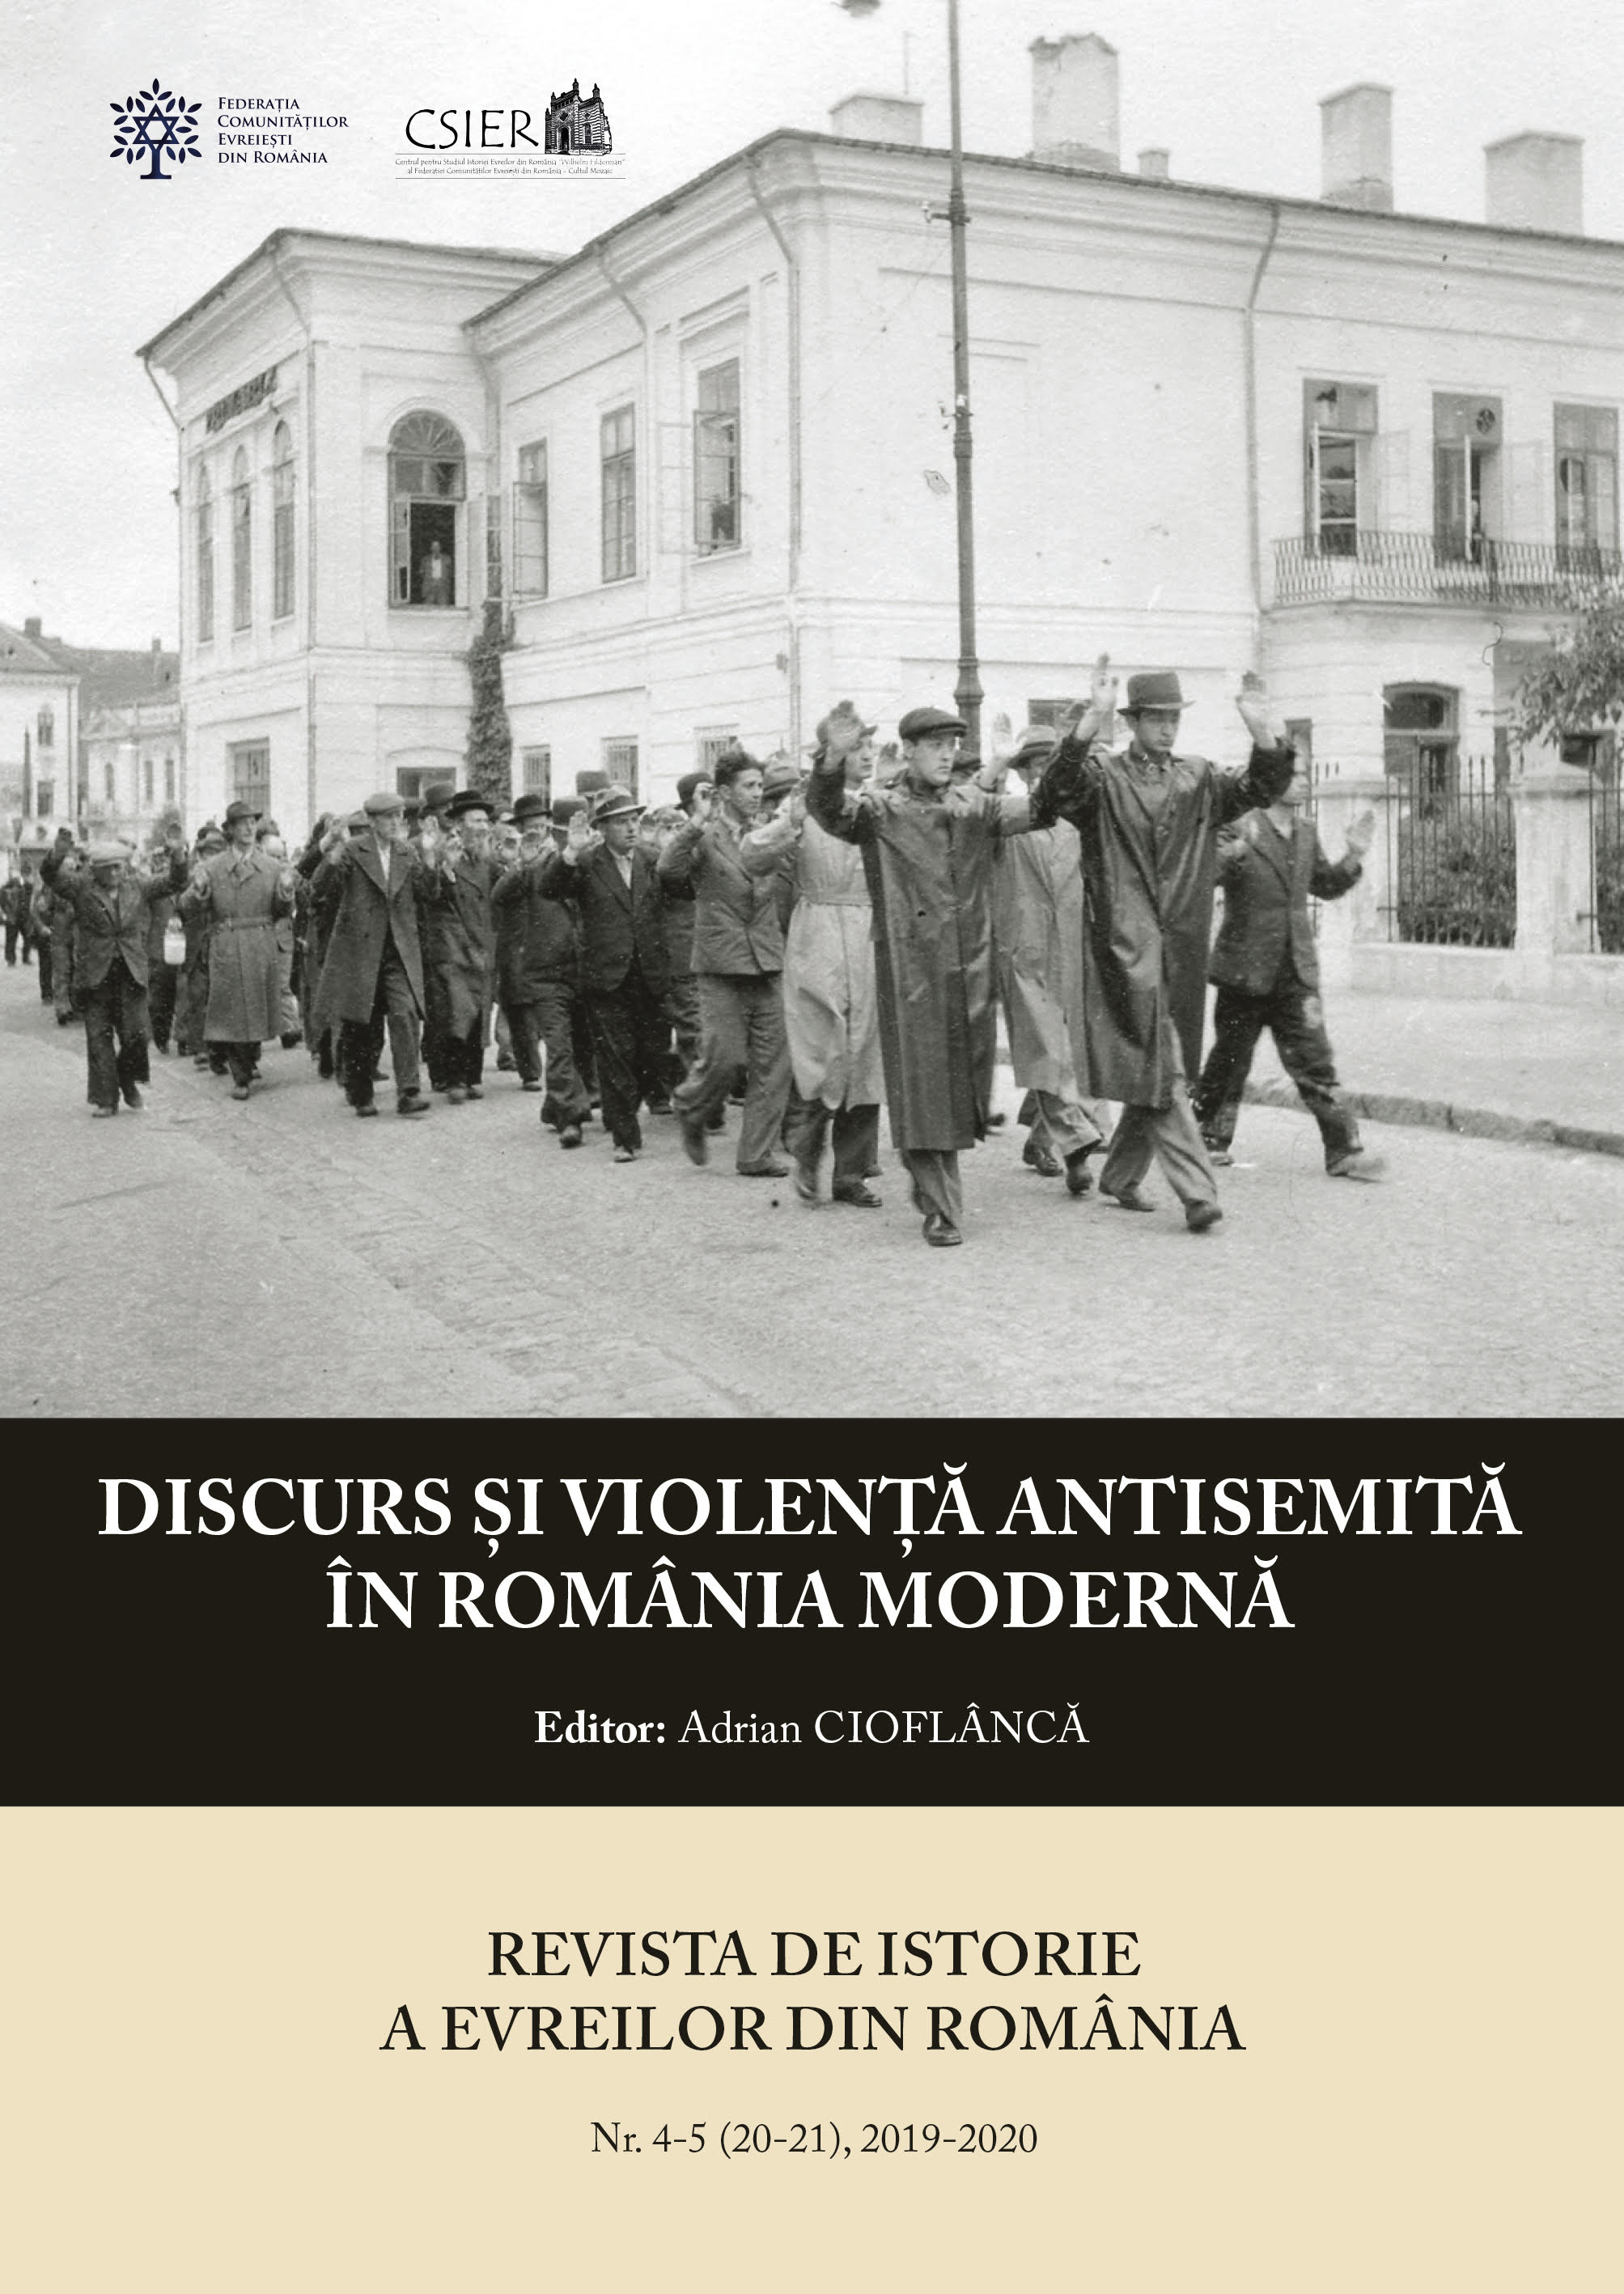 Miron Cristea, patriarhul Bisericii Ortodoxe Române: influența sa politică și religioasă cu privire la soarta evreilor din România (februarie 1938 - martie 1939)